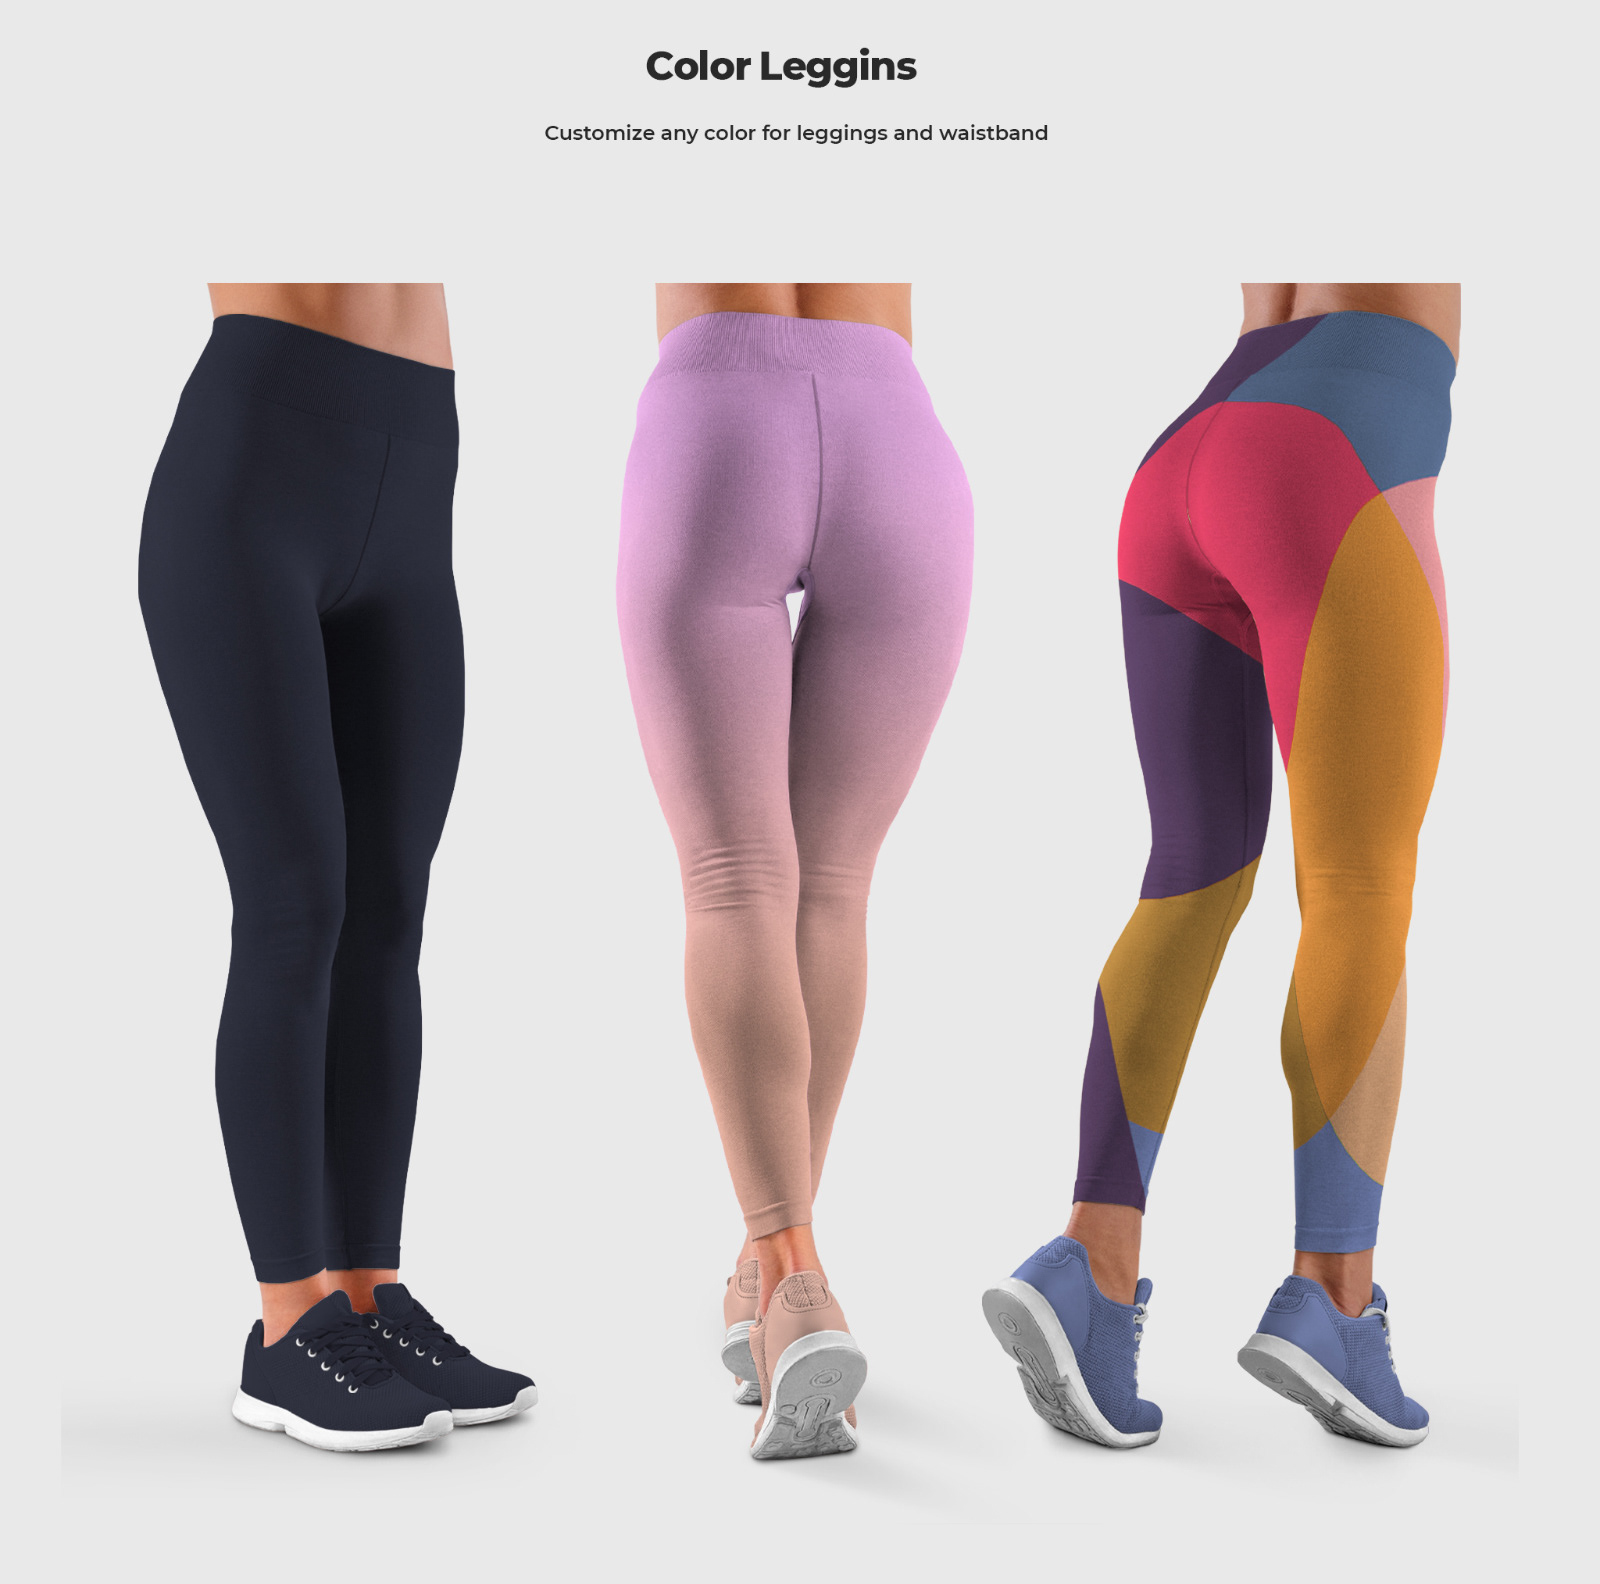 Mulheres leggins mockups. o design é fácil de personalizar o